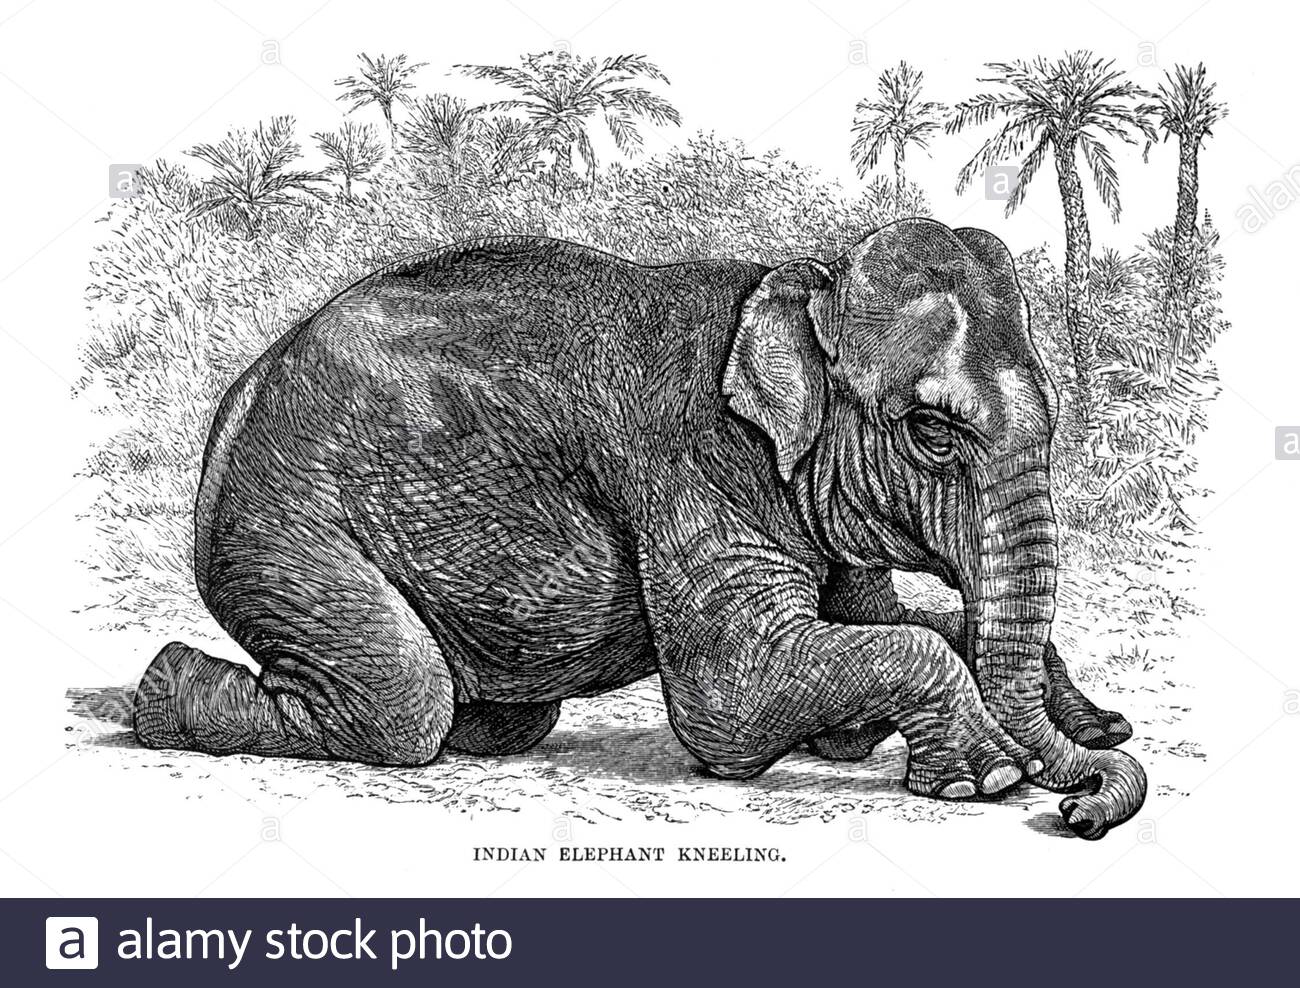 Elefante indiano inginocchiato, illustrazione vintage del 1894 Foto Stock